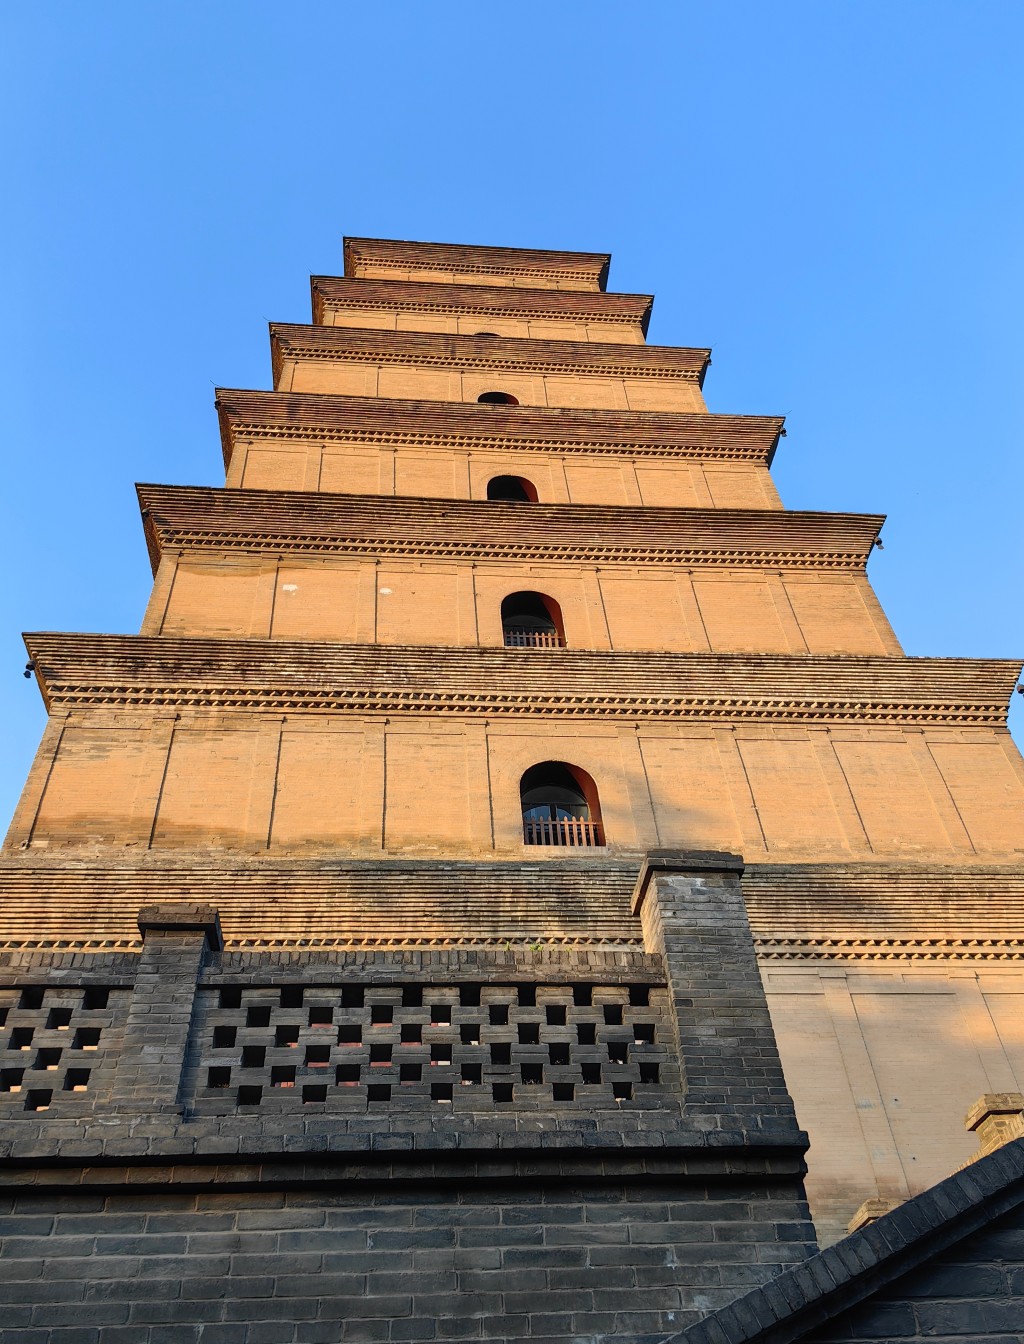 佛教歷史遺迹大雁塔位於大慈恩寺內。微博